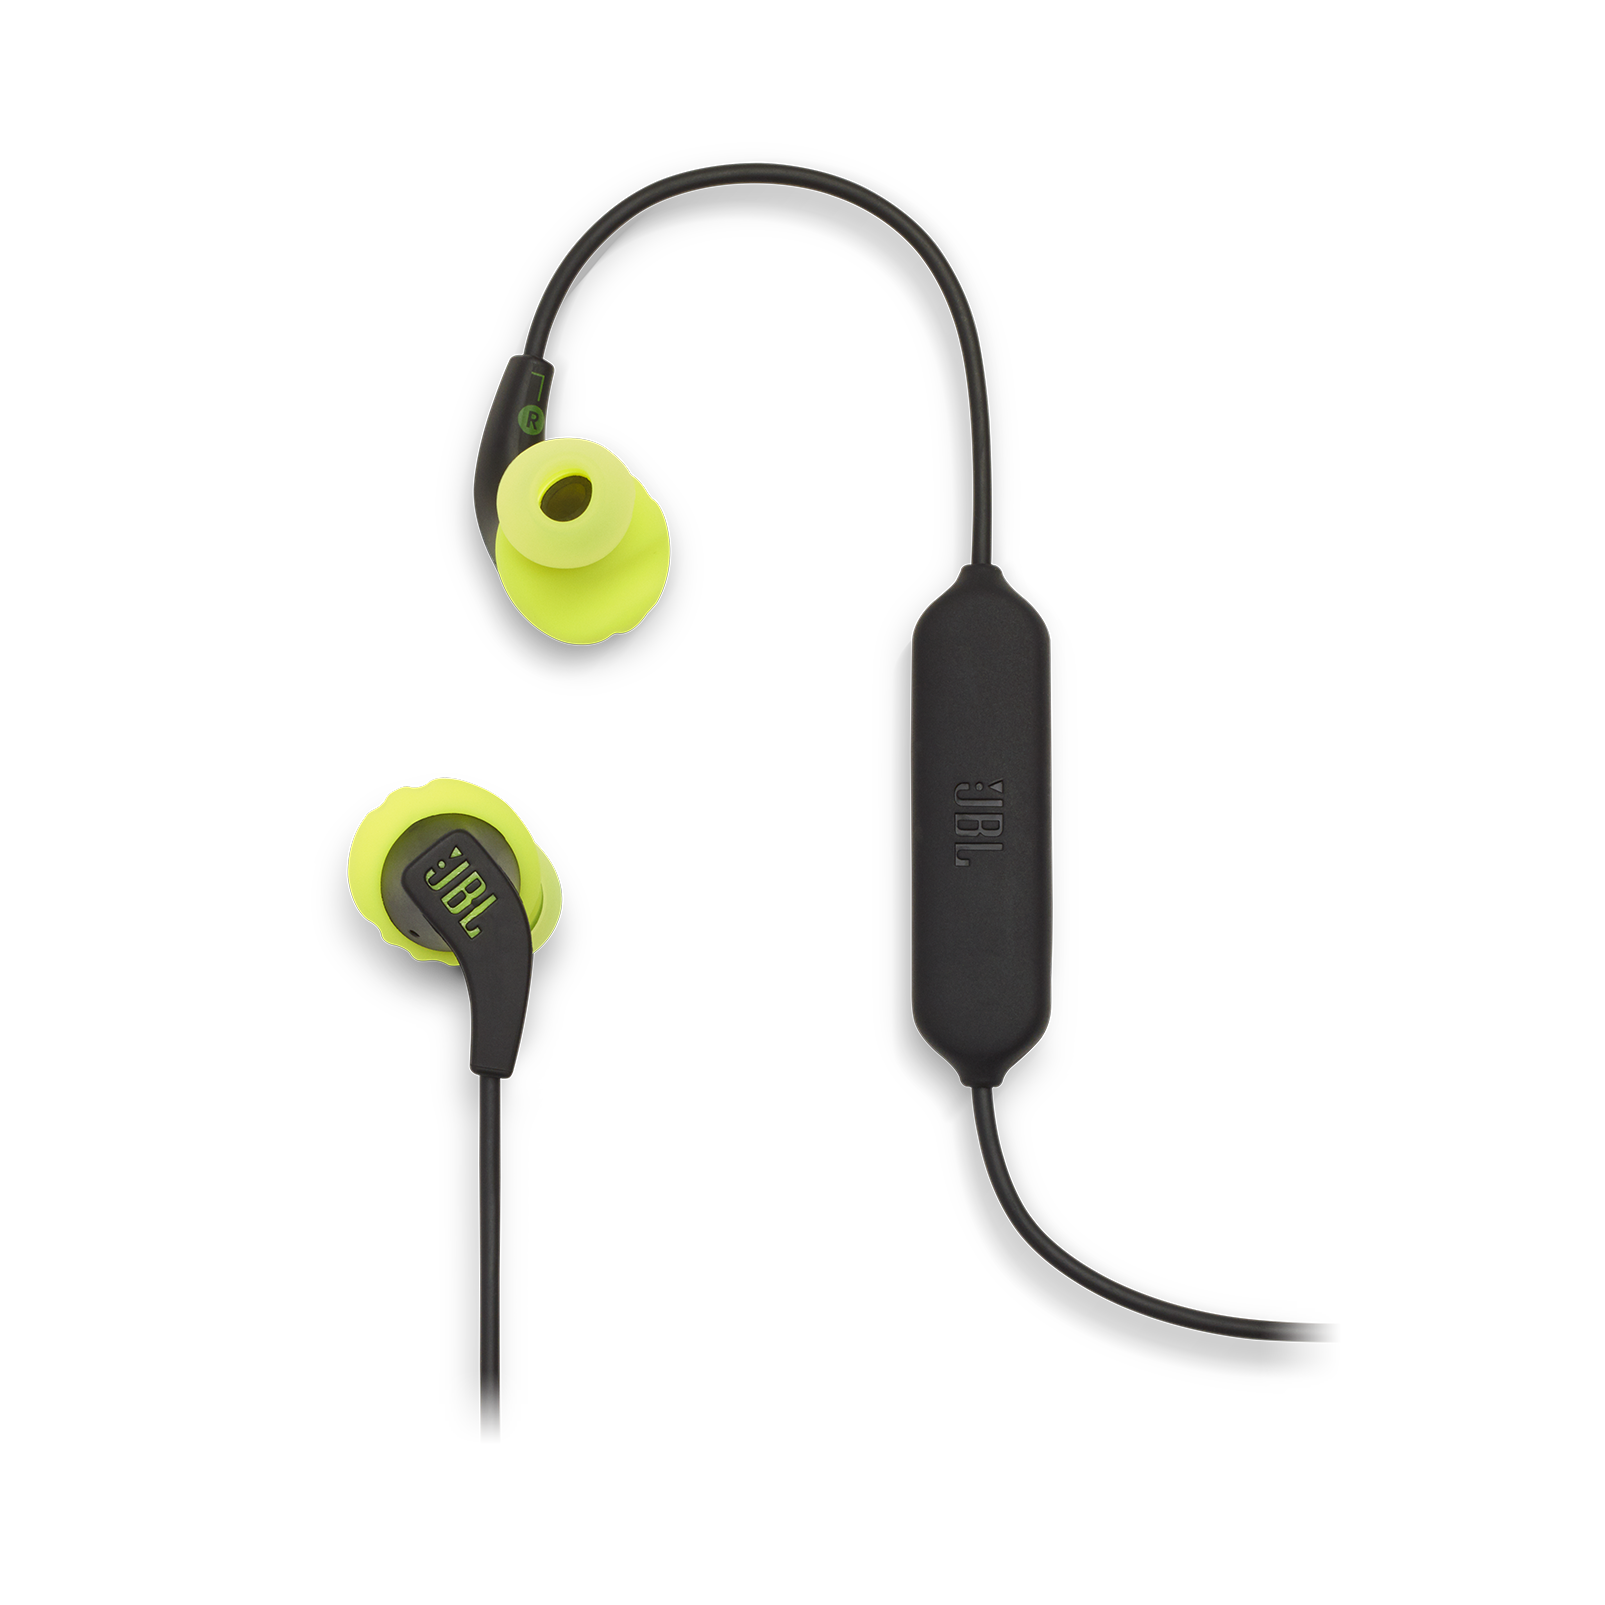 JBL Endurance RUNBT - Green - Sweatproof Wireless In-Ear Sport Headphones - Detailshot 1